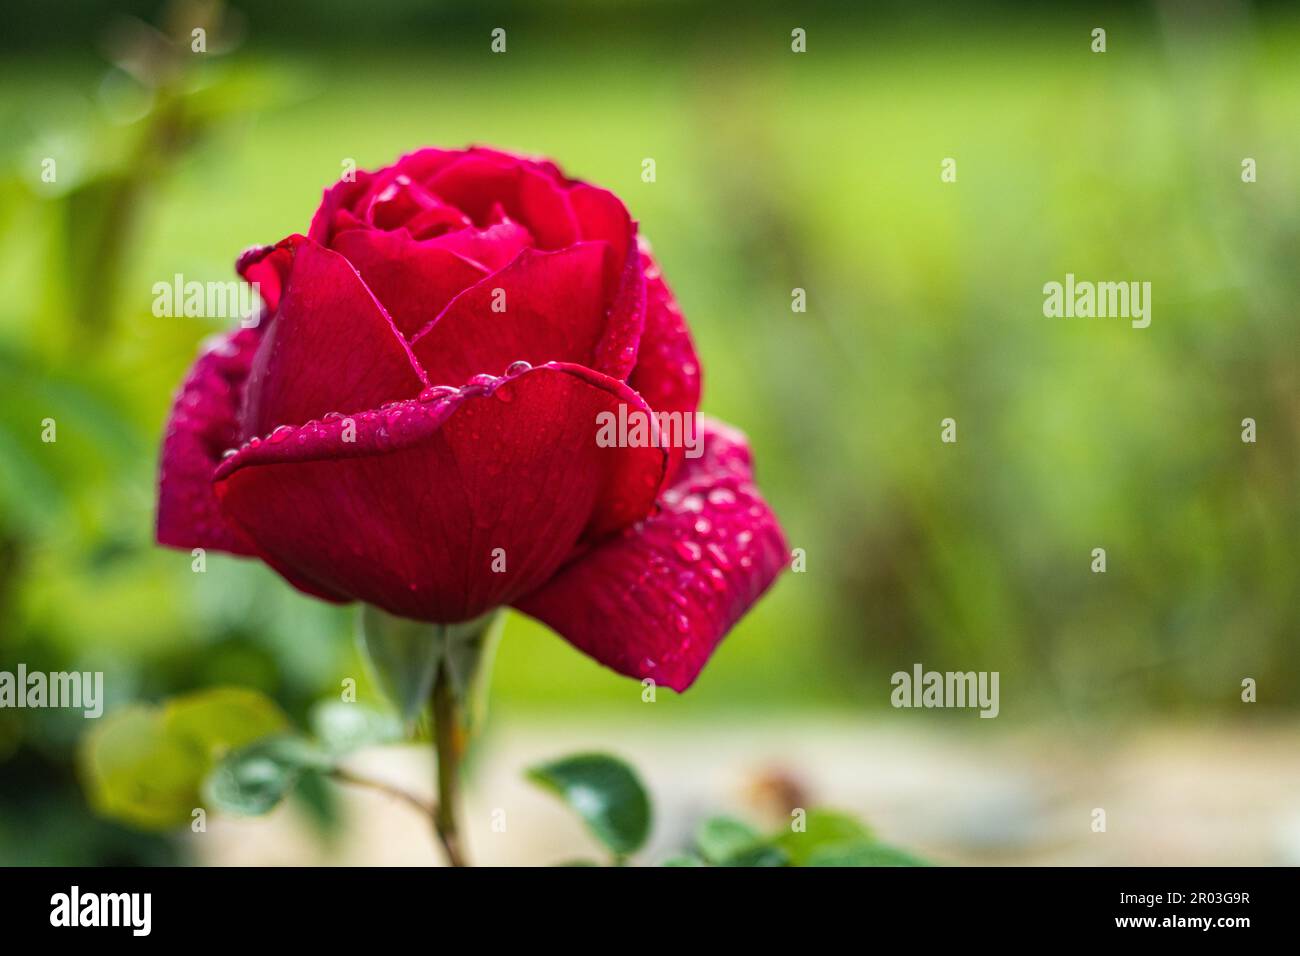 Rosa rossa delicata con petali umidi e foglie verdi che crescono in giardino con vegetazione lussureggiante Foto Stock